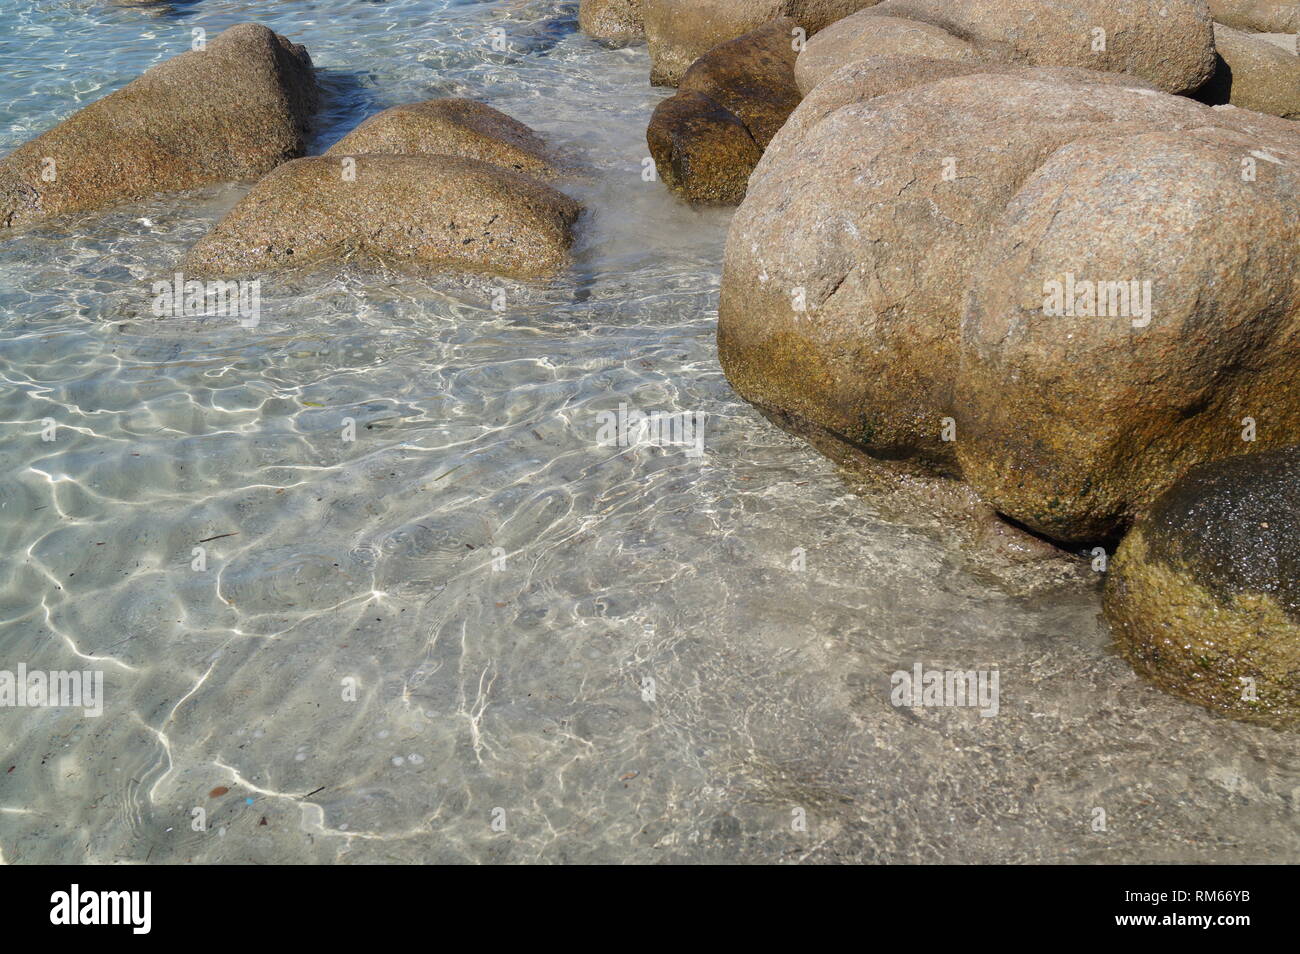 Belles plages - Santa Giulia Brach, Corse du Sud, Porto Vecchio Corse Banque D'Images